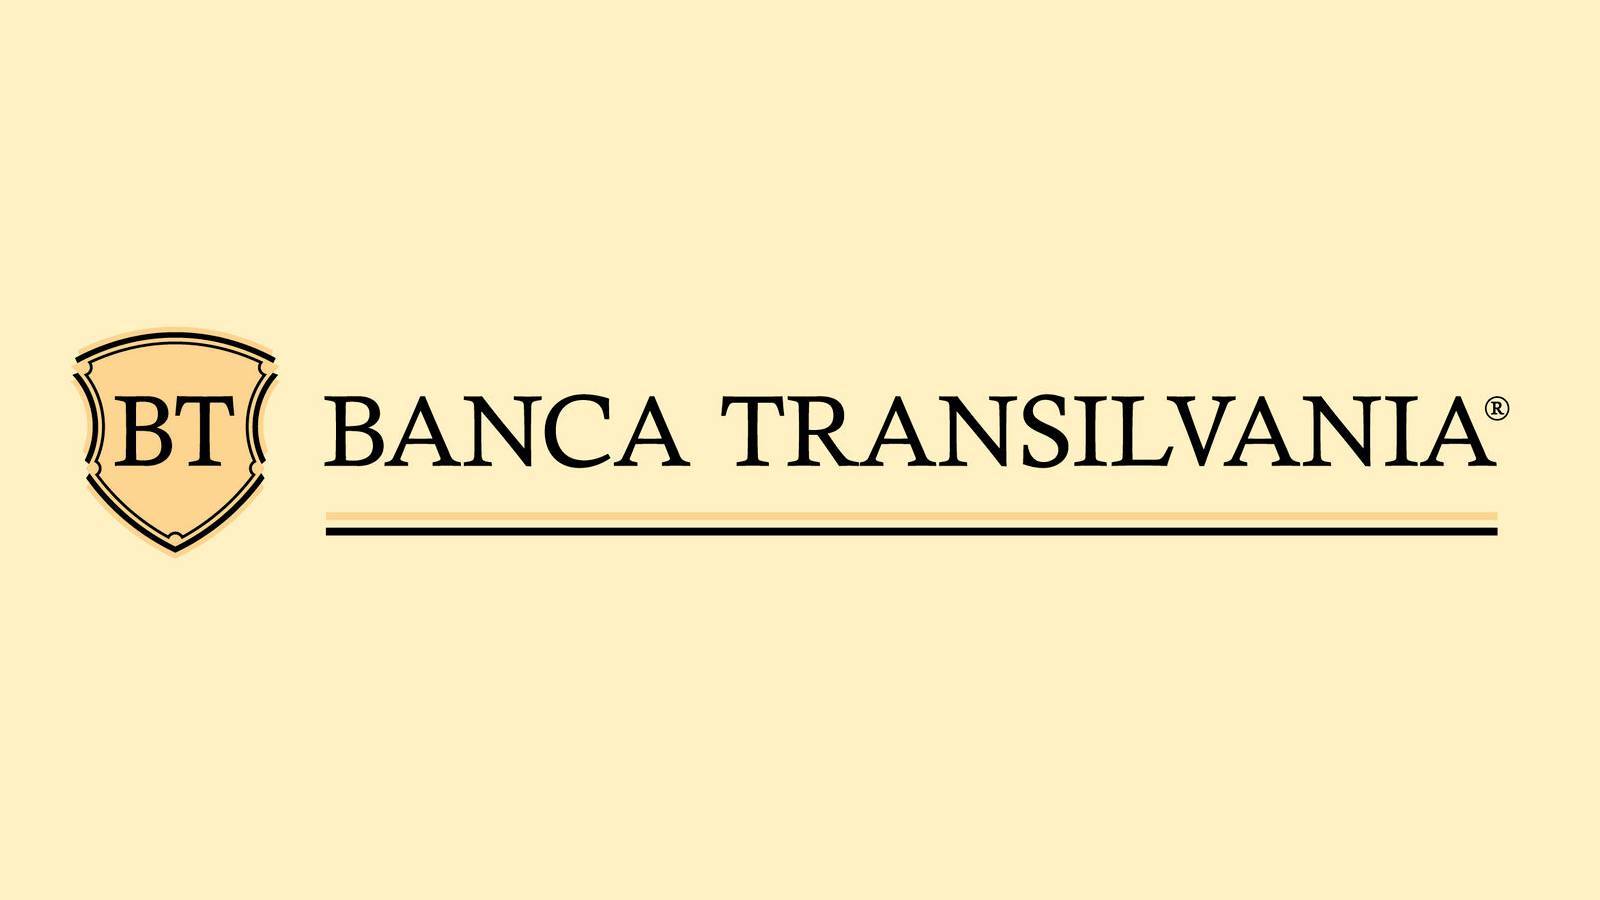 BANCA Transilvania BELANGRIJKE informatie die aan klanten wordt verstrekt en die u vandaag moet kennen